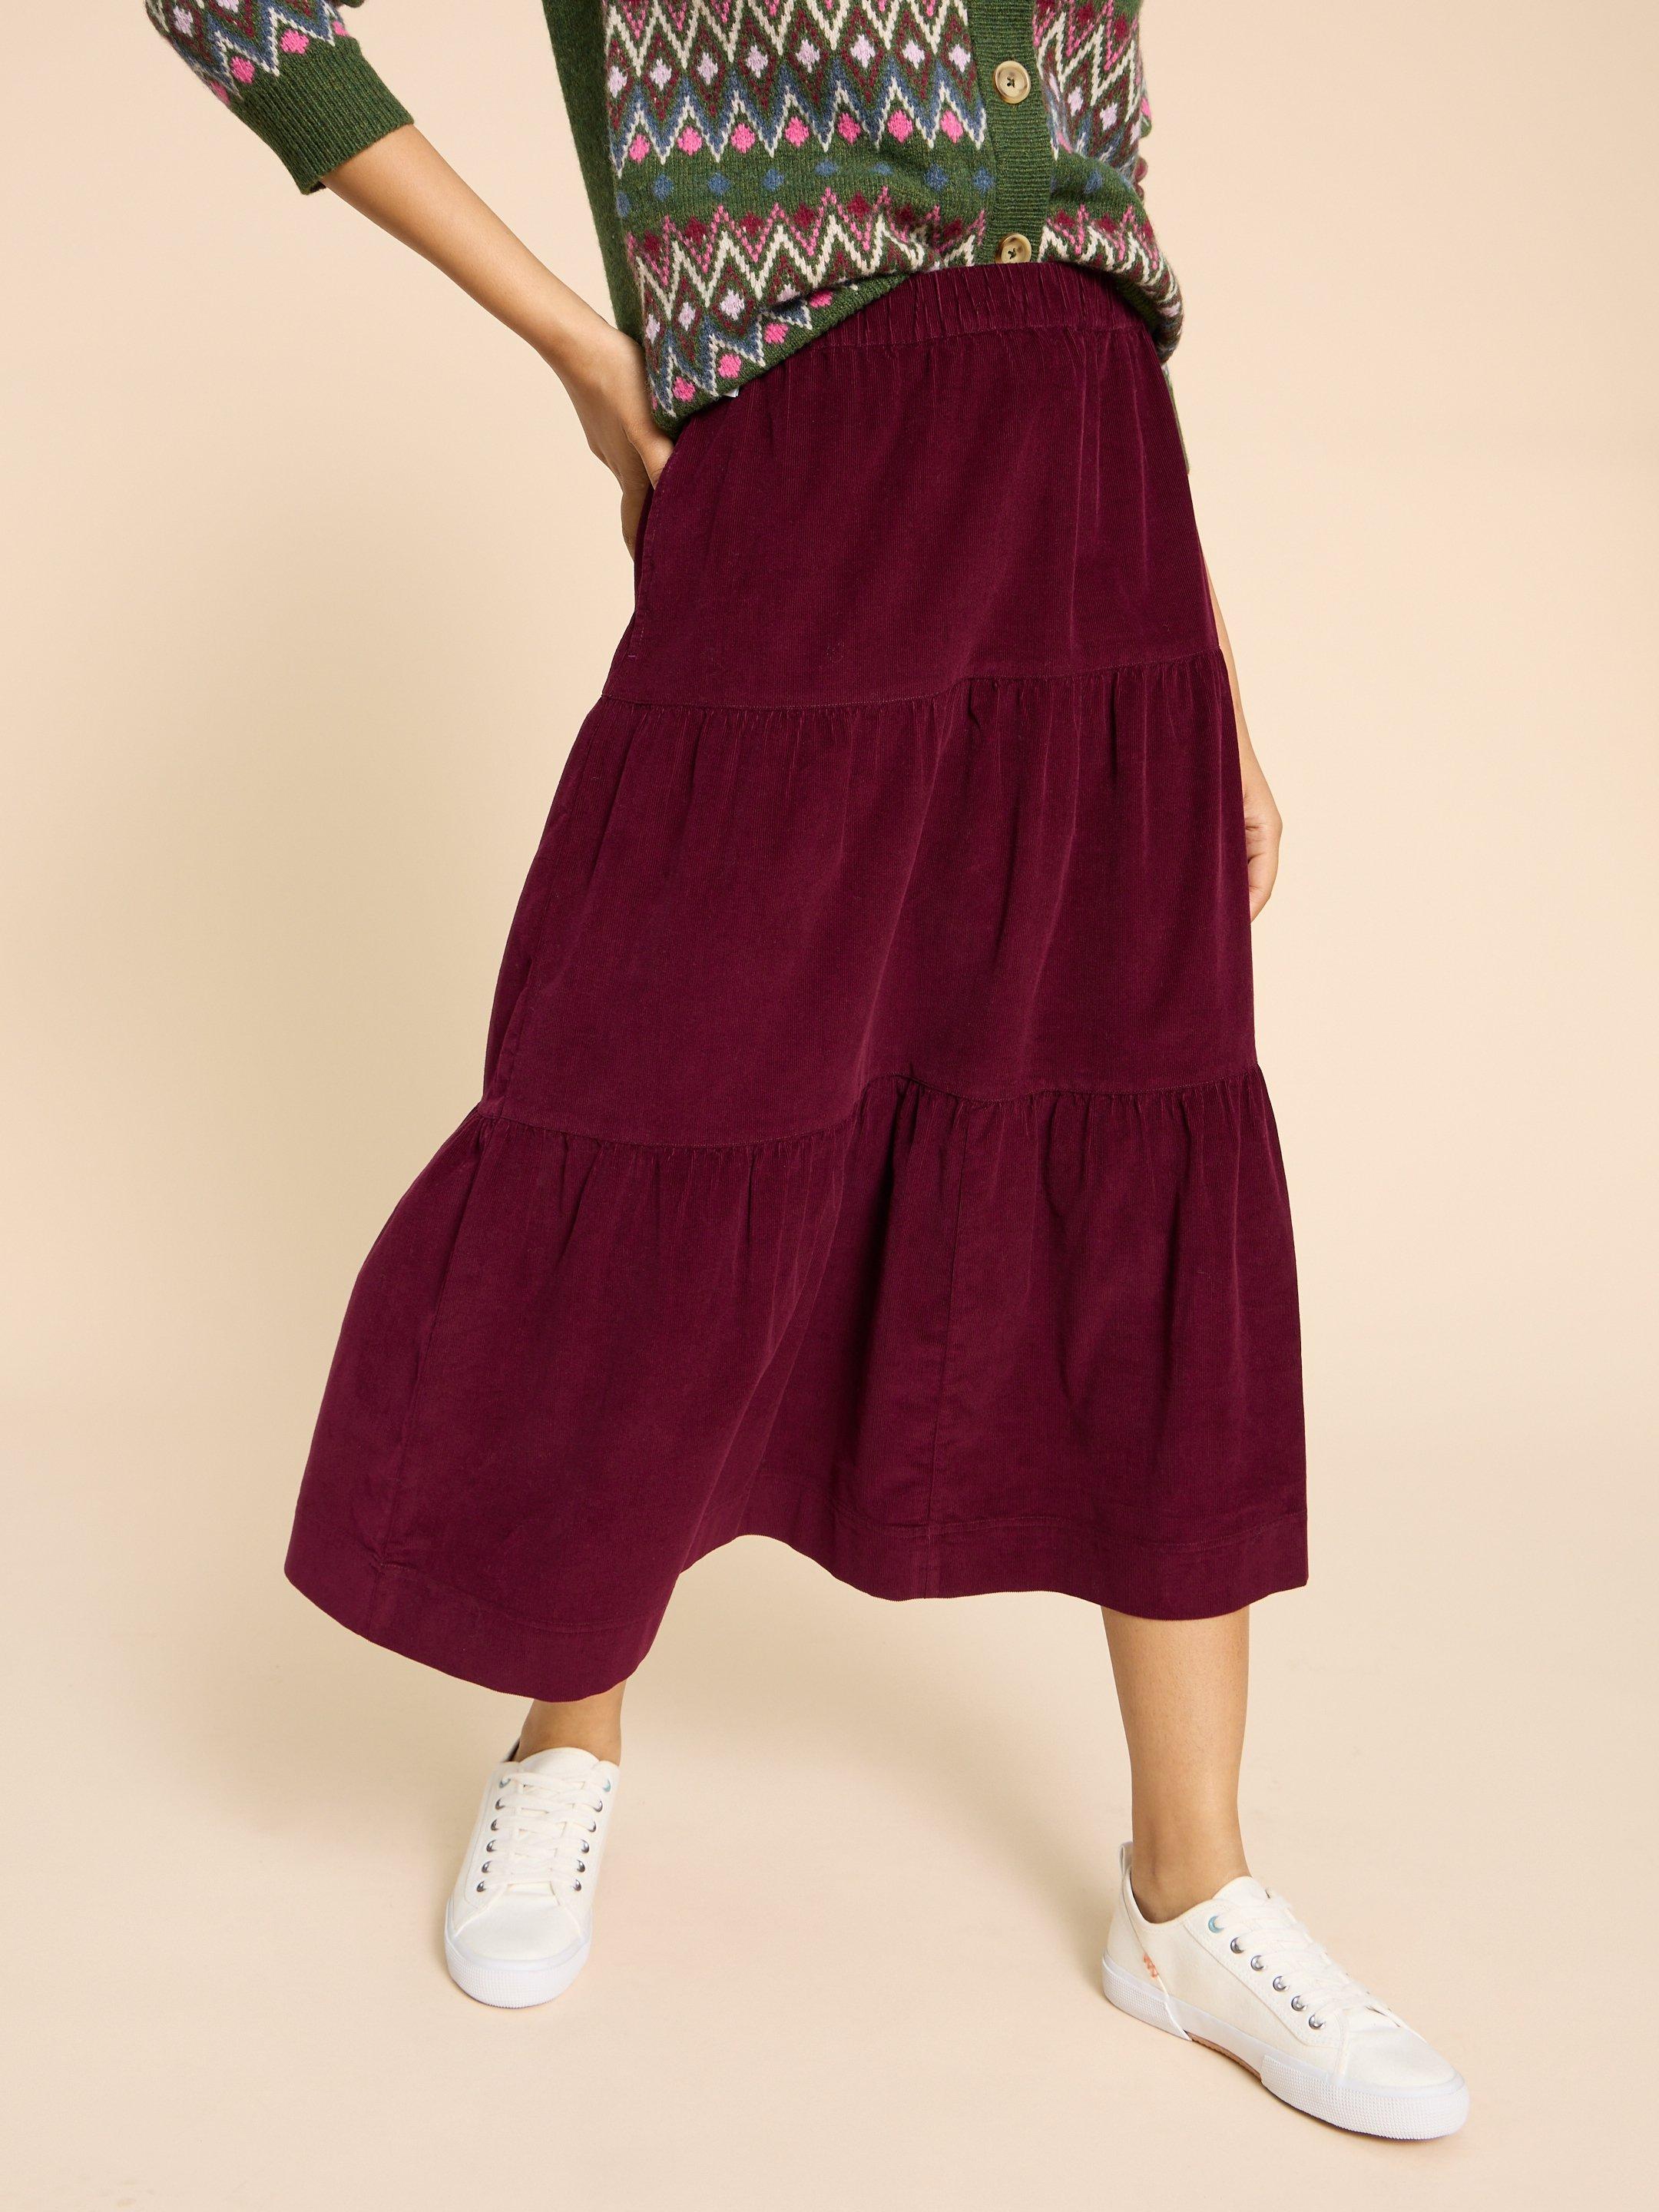 Jade Tiered Cord Skirt in DK PLUM - MODEL DETAIL